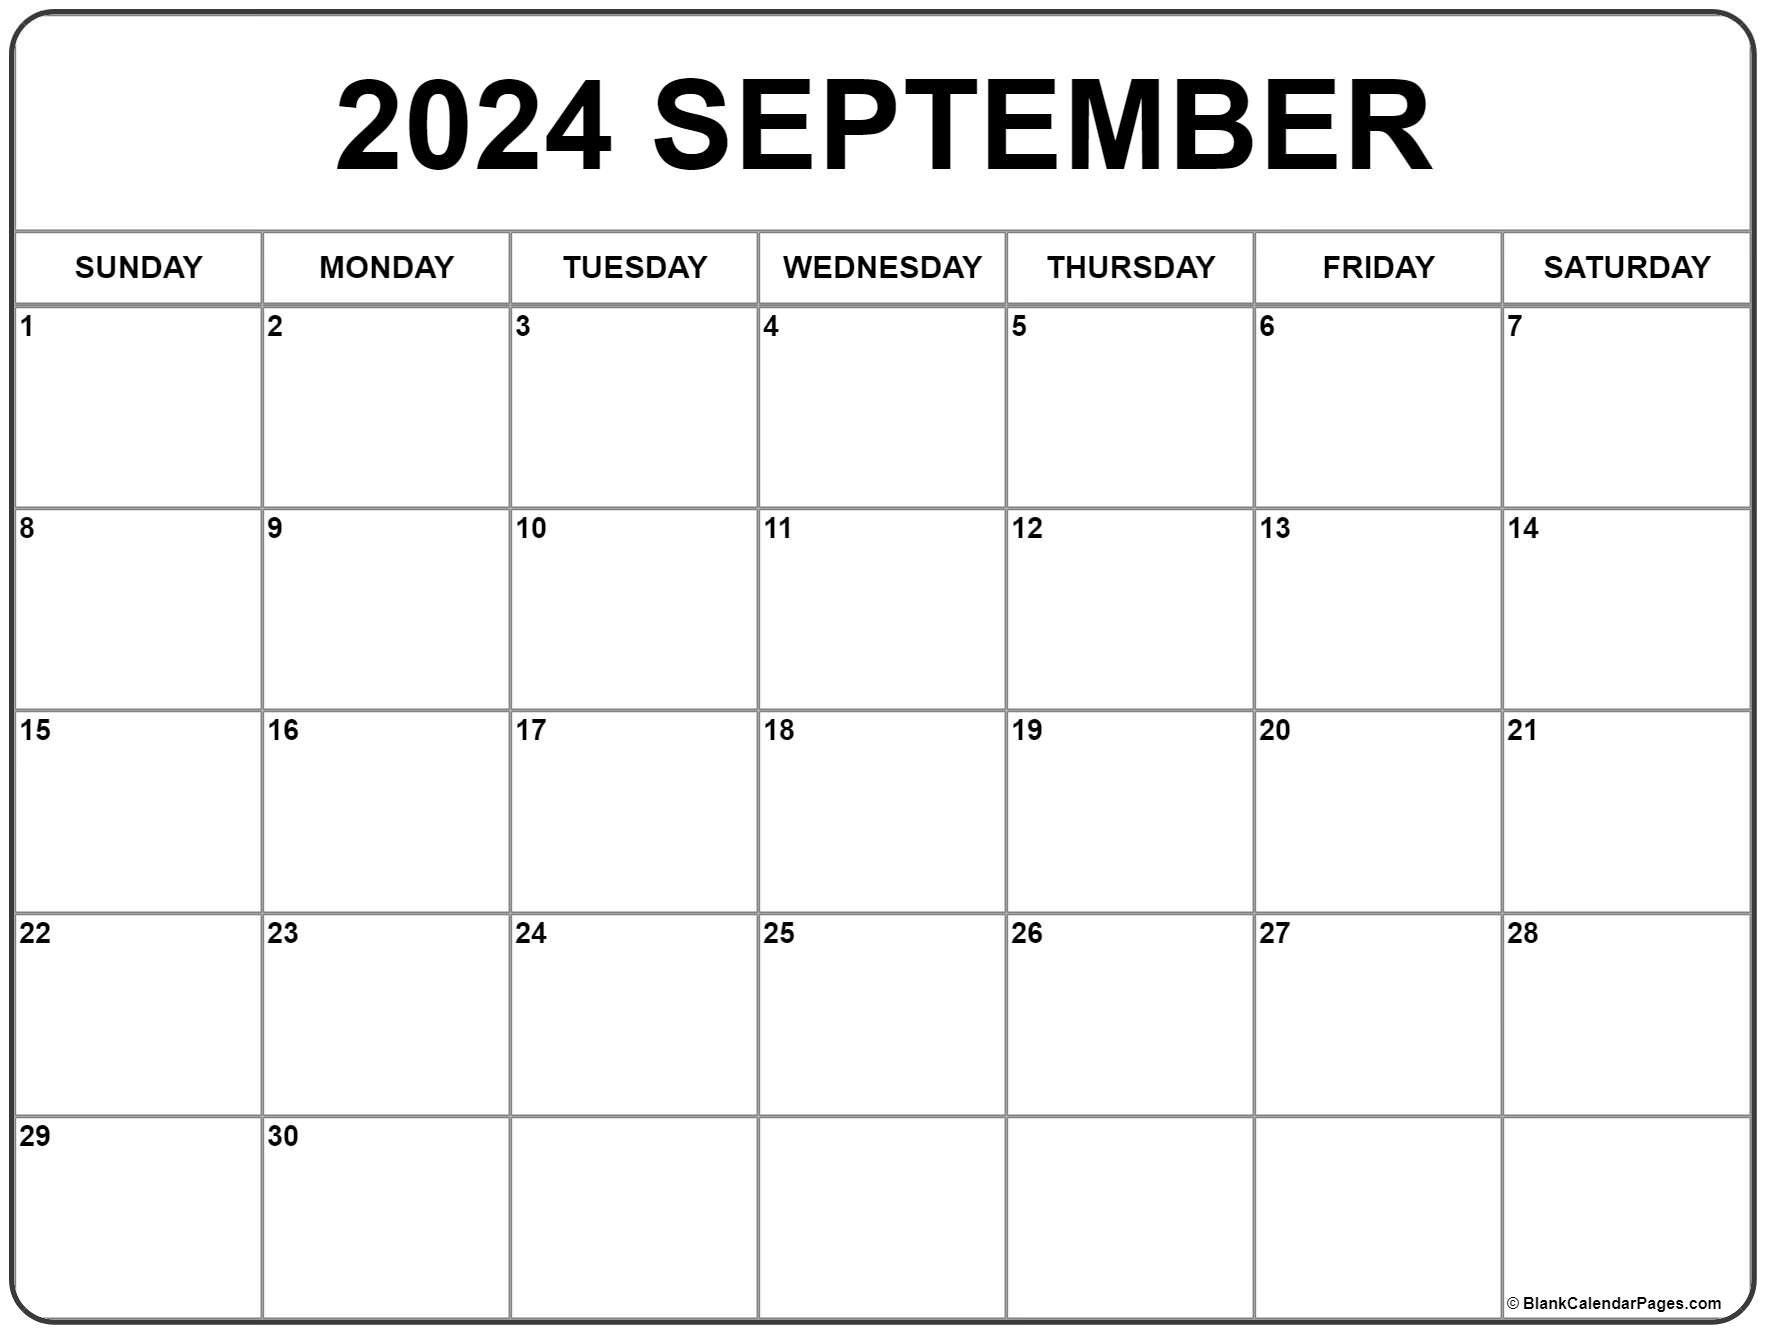 Free Printable September 2021 Calendar September 2021 calendar | free printable monthly calendars